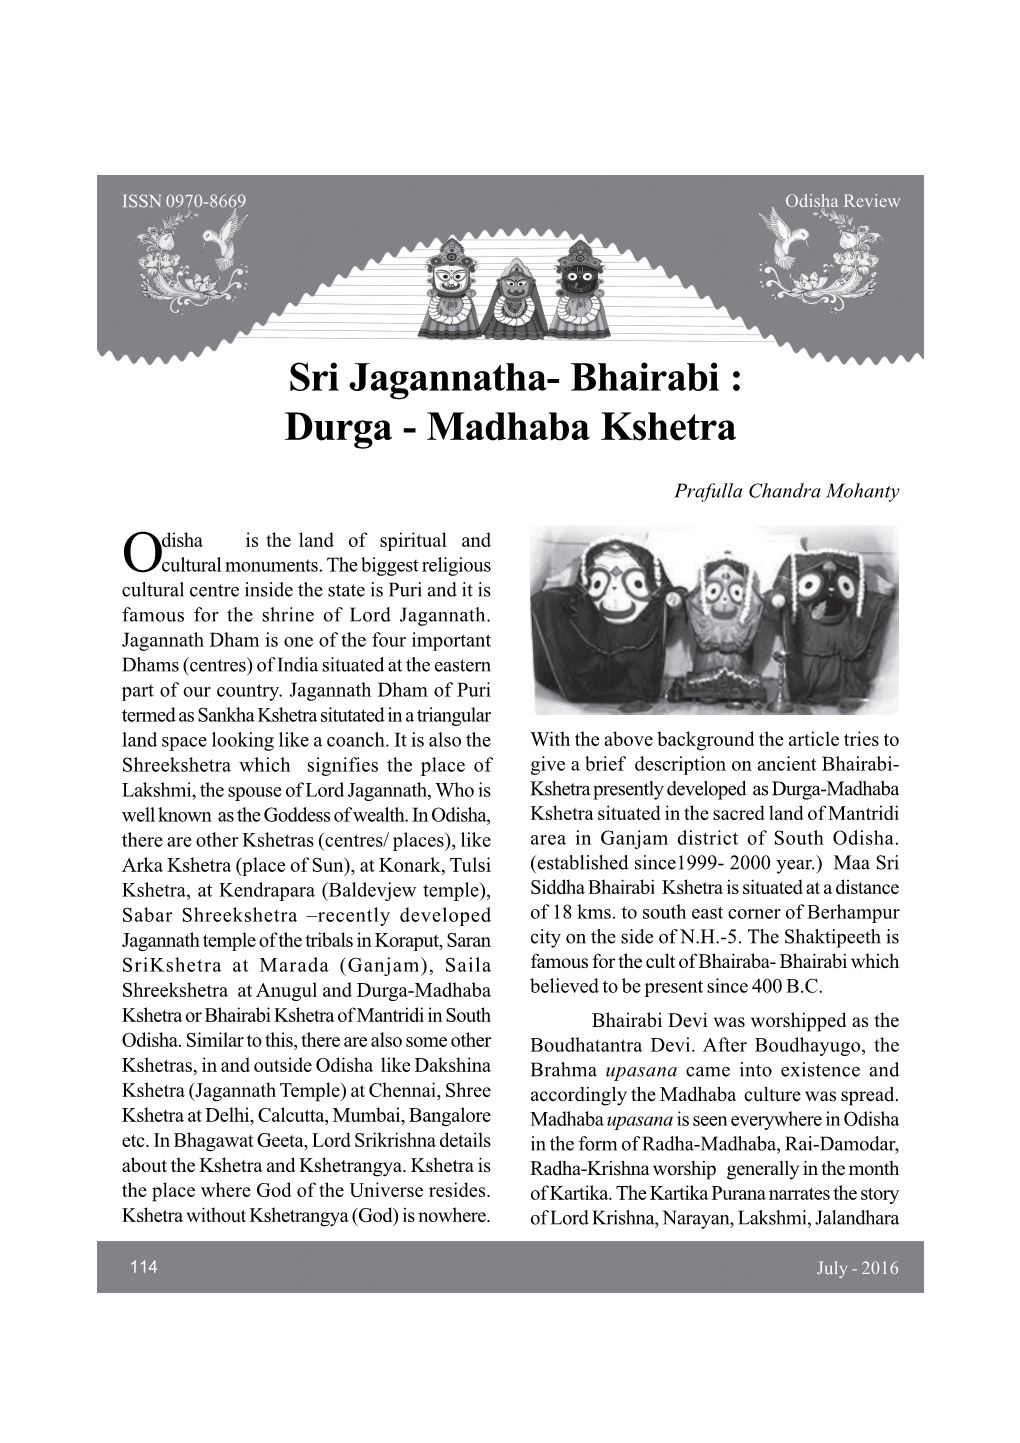 Sri Jagannatha- Bhairabi : Durga - Madhaba Kshetra